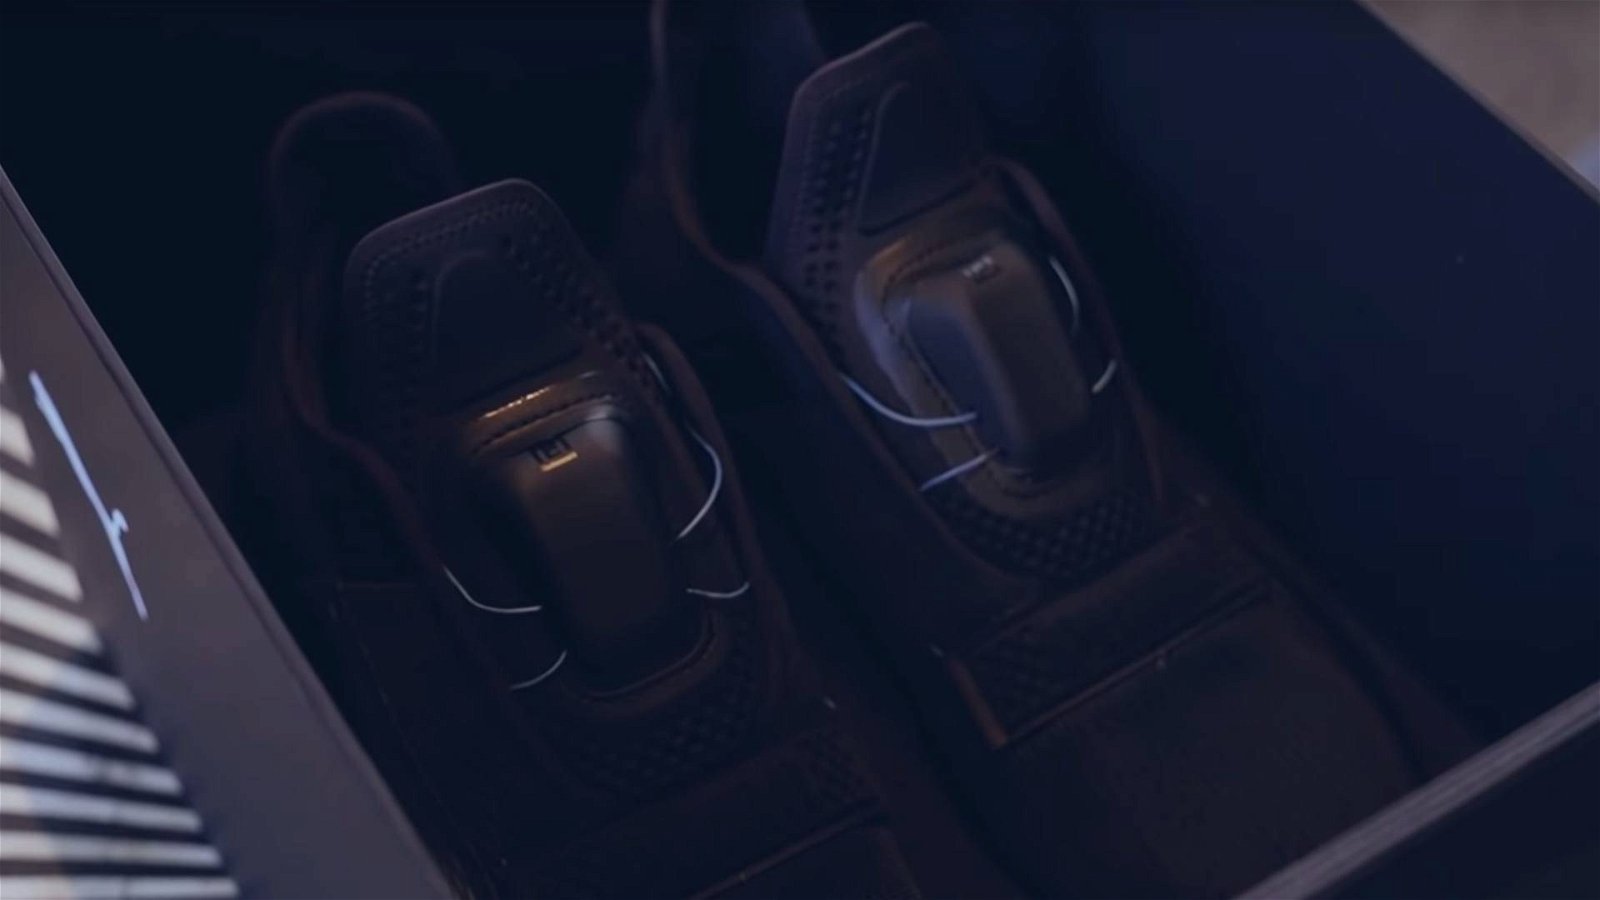 Immagine di Puma Fi, le scarpe sportive autoallaccianti che accendono la sfida con Nike